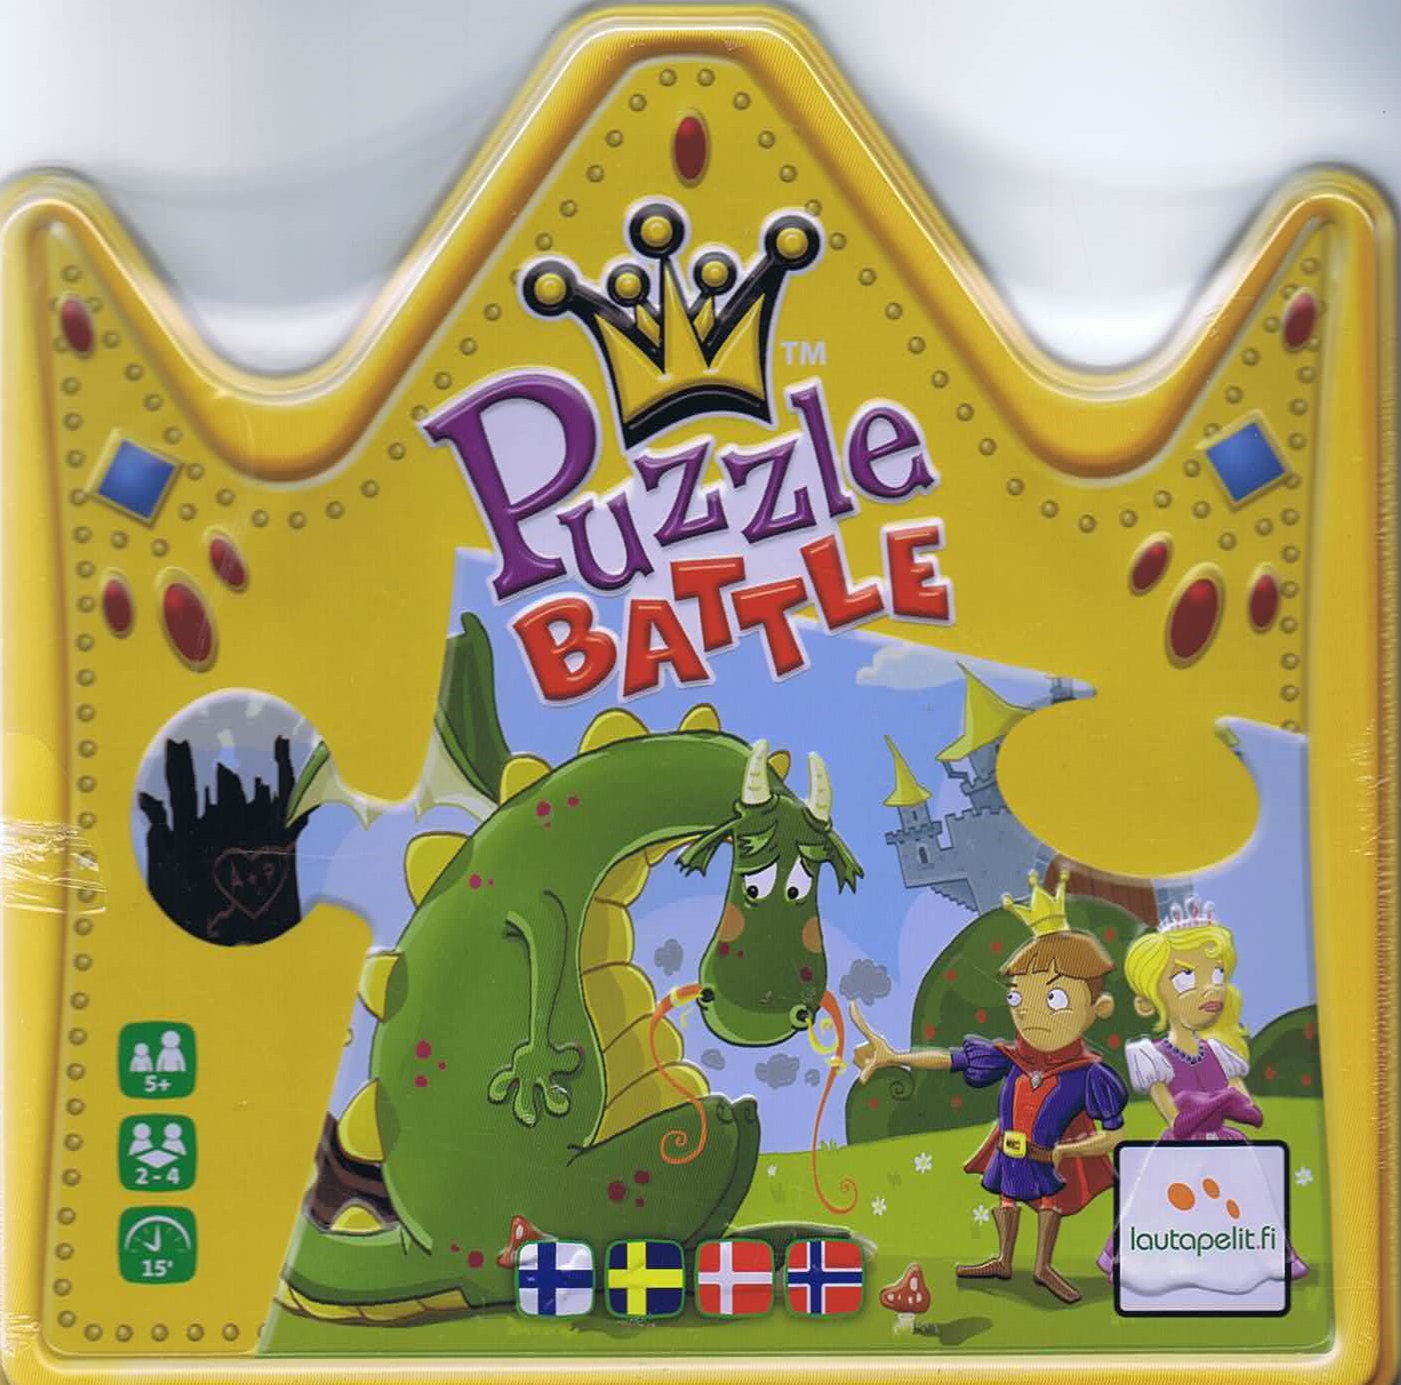 Puzzle Battle